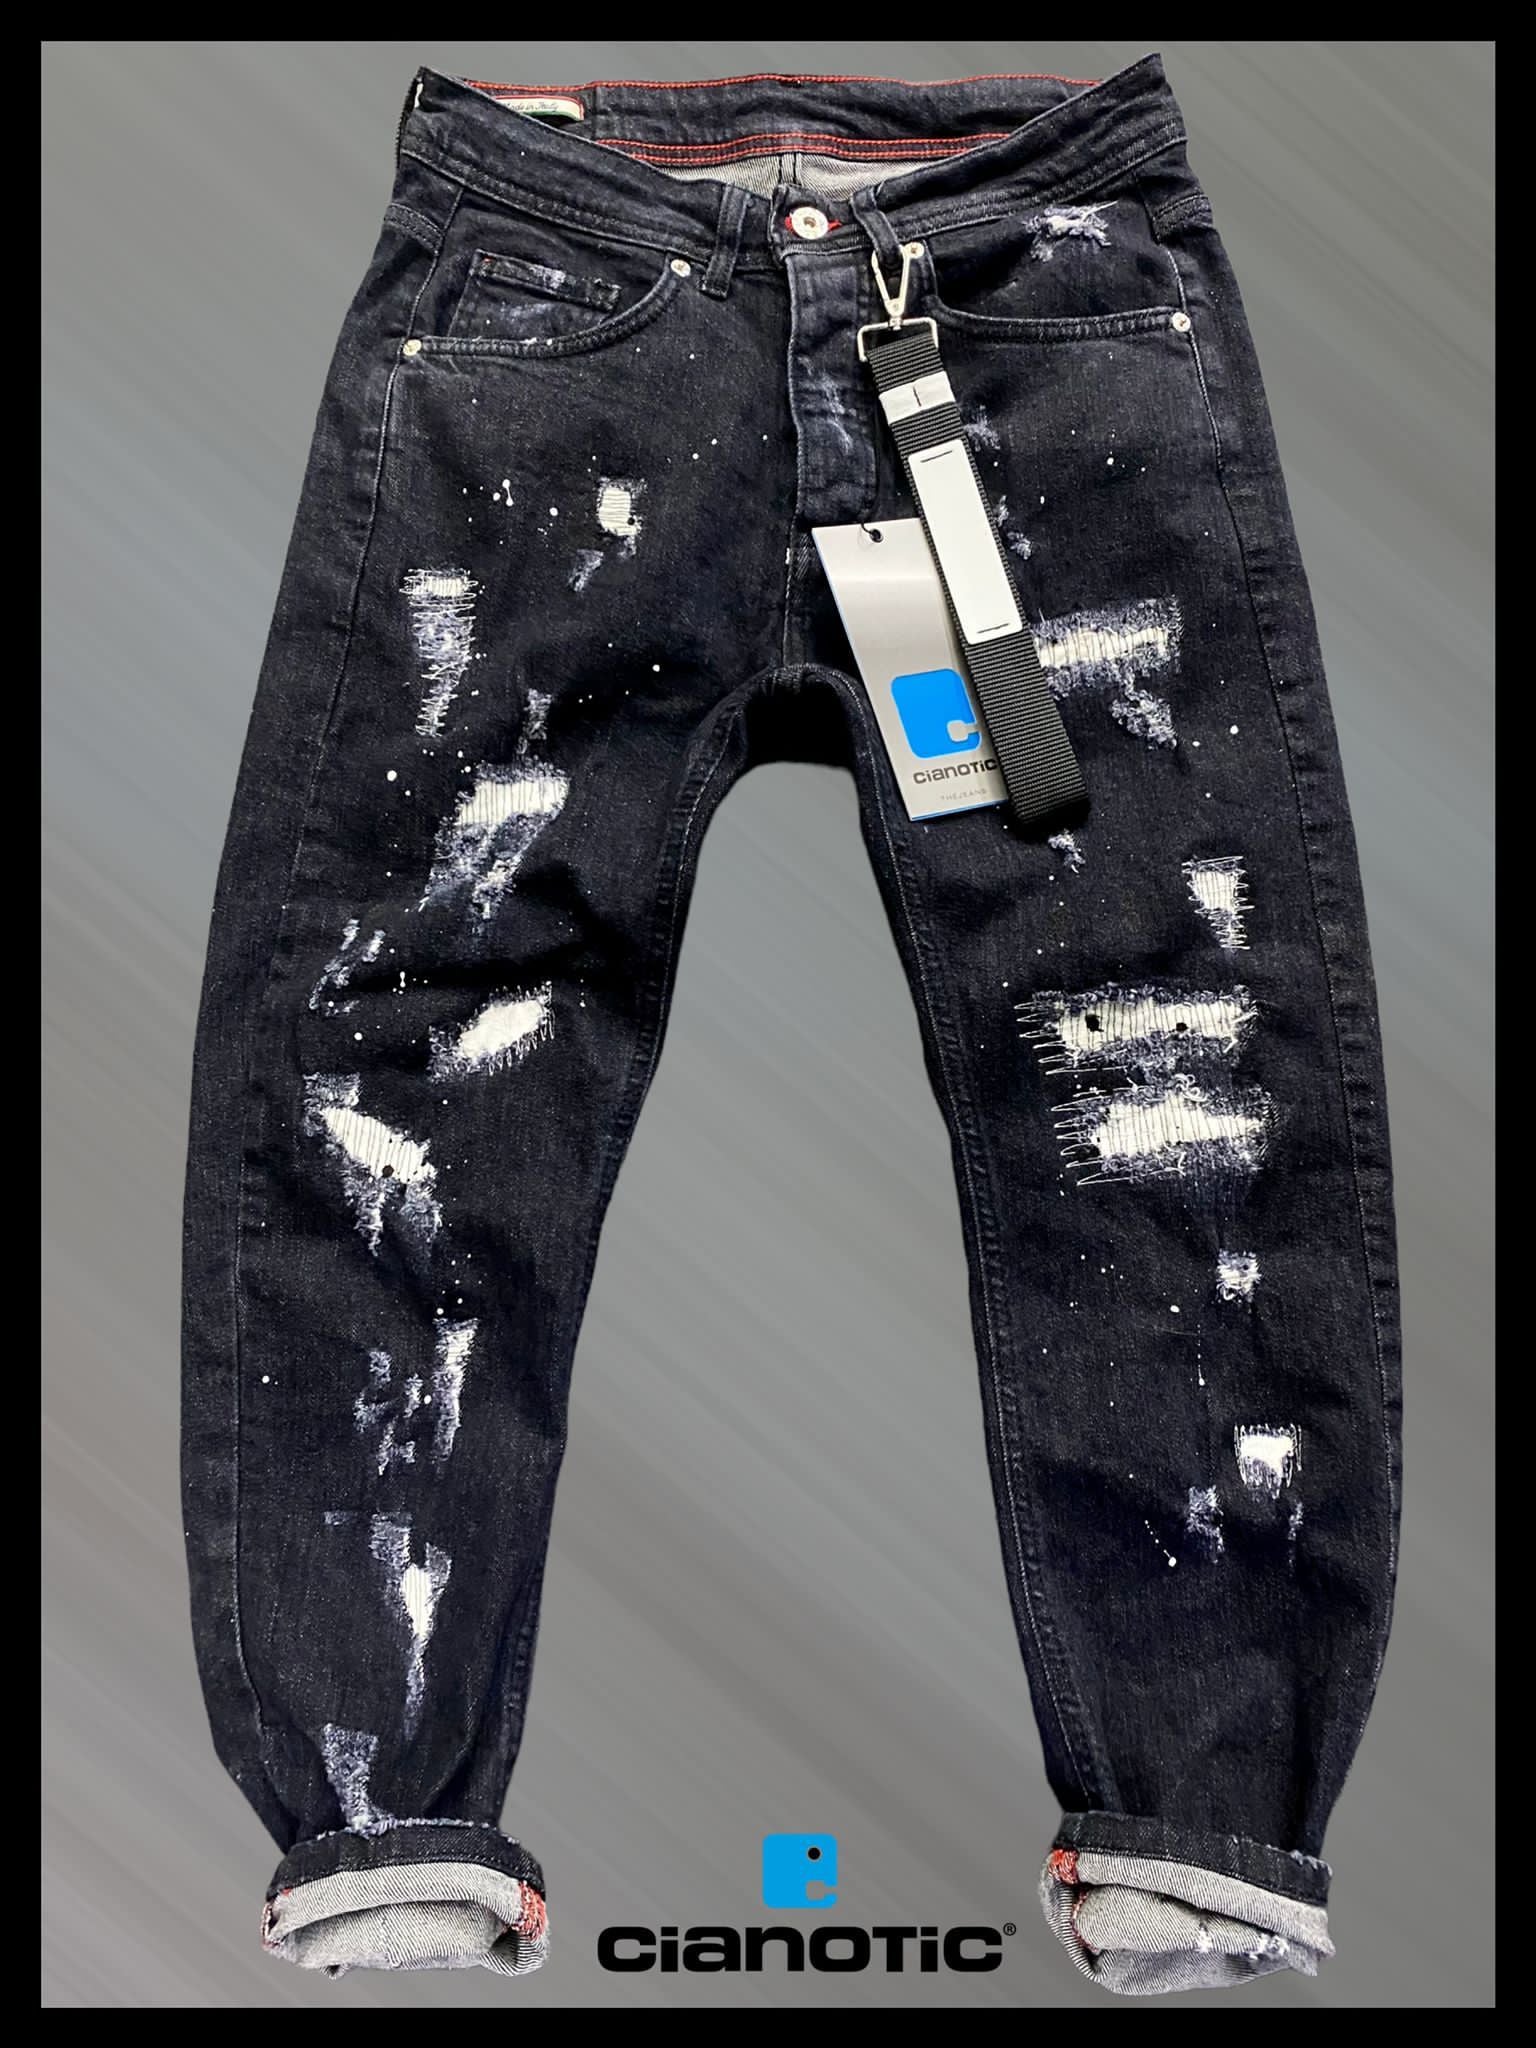 Cianotic jeans uomo lyon